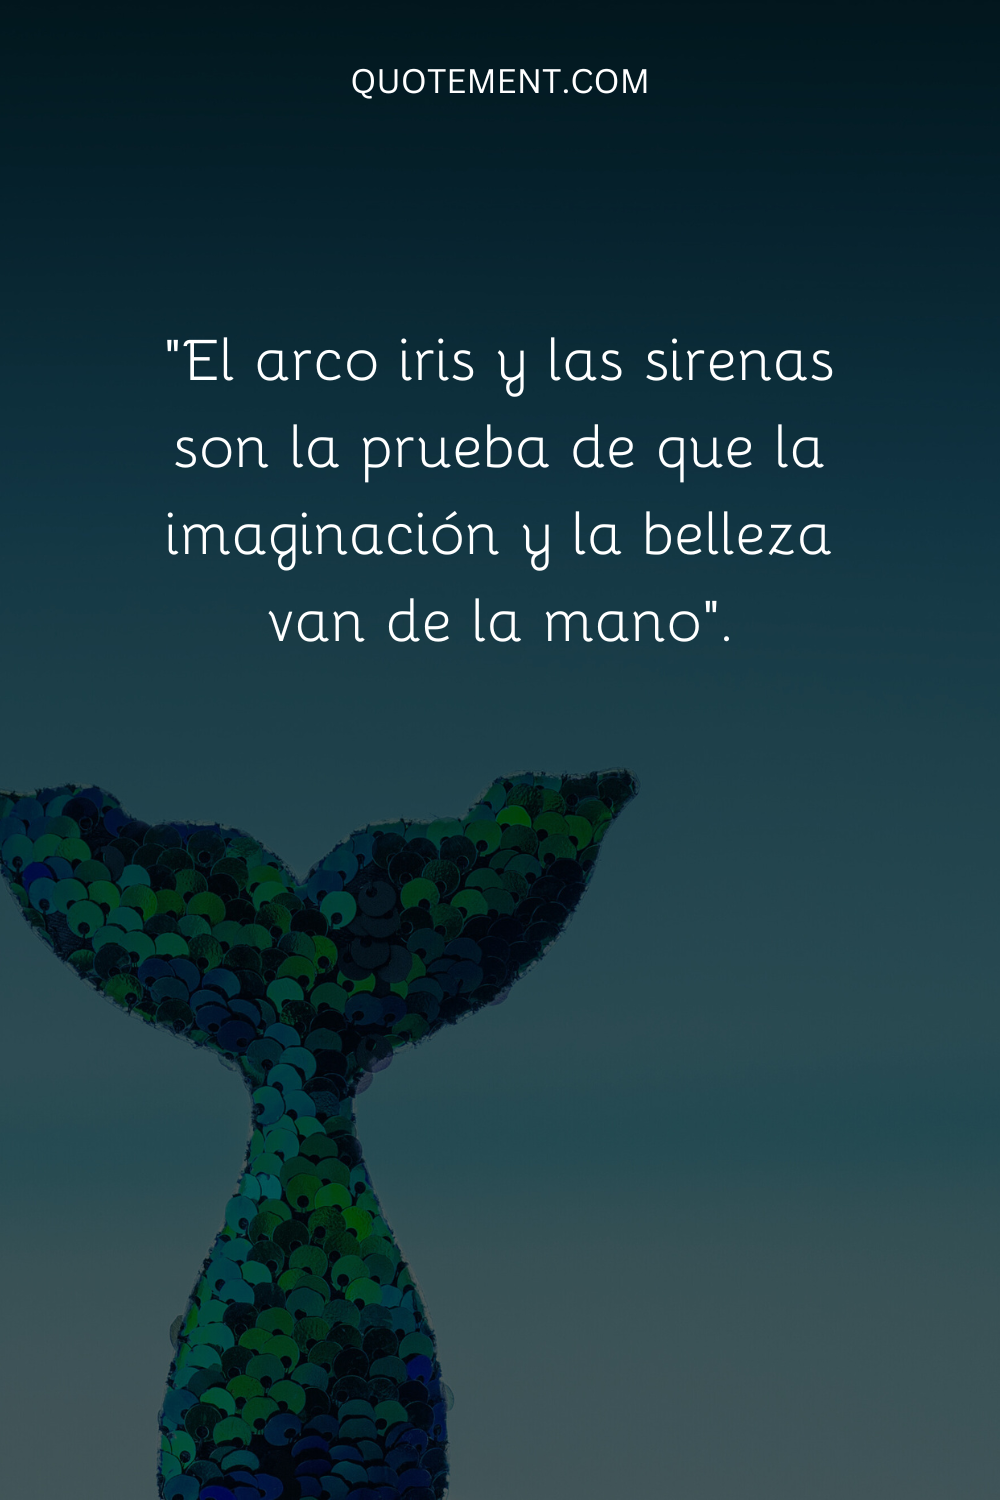 "Arco iris y sirenas son la prueba de que imaginación y belleza van de la mano".